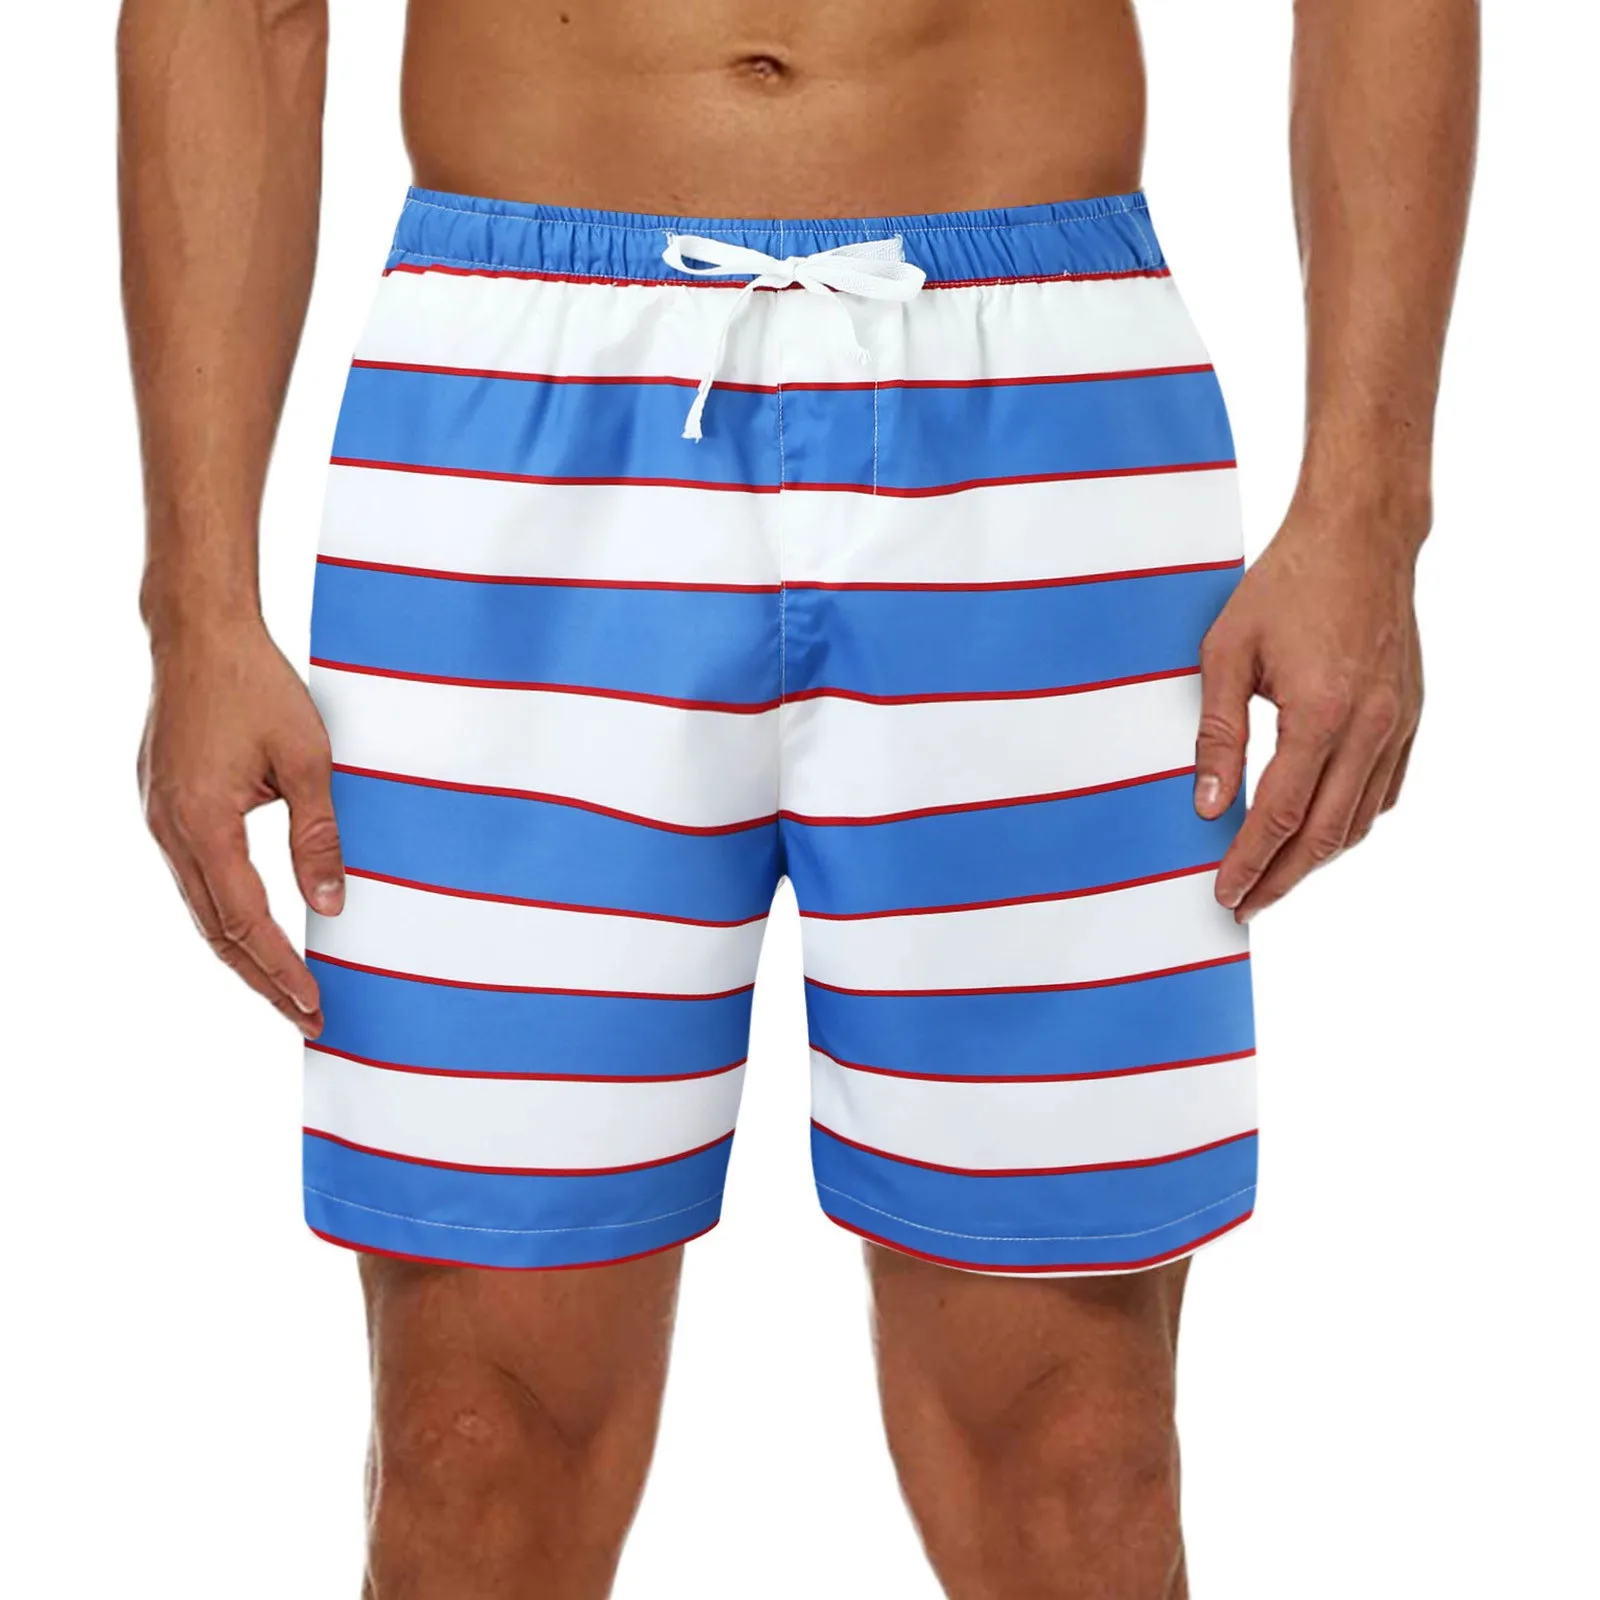 Letnie męskie spodenki plażowe stroje kąpielowe spodenki kąpielowe kąpielówki strój kąpielowy Casual Board spodenki kąpielowe męskie stroje kąpielowe odzież męska